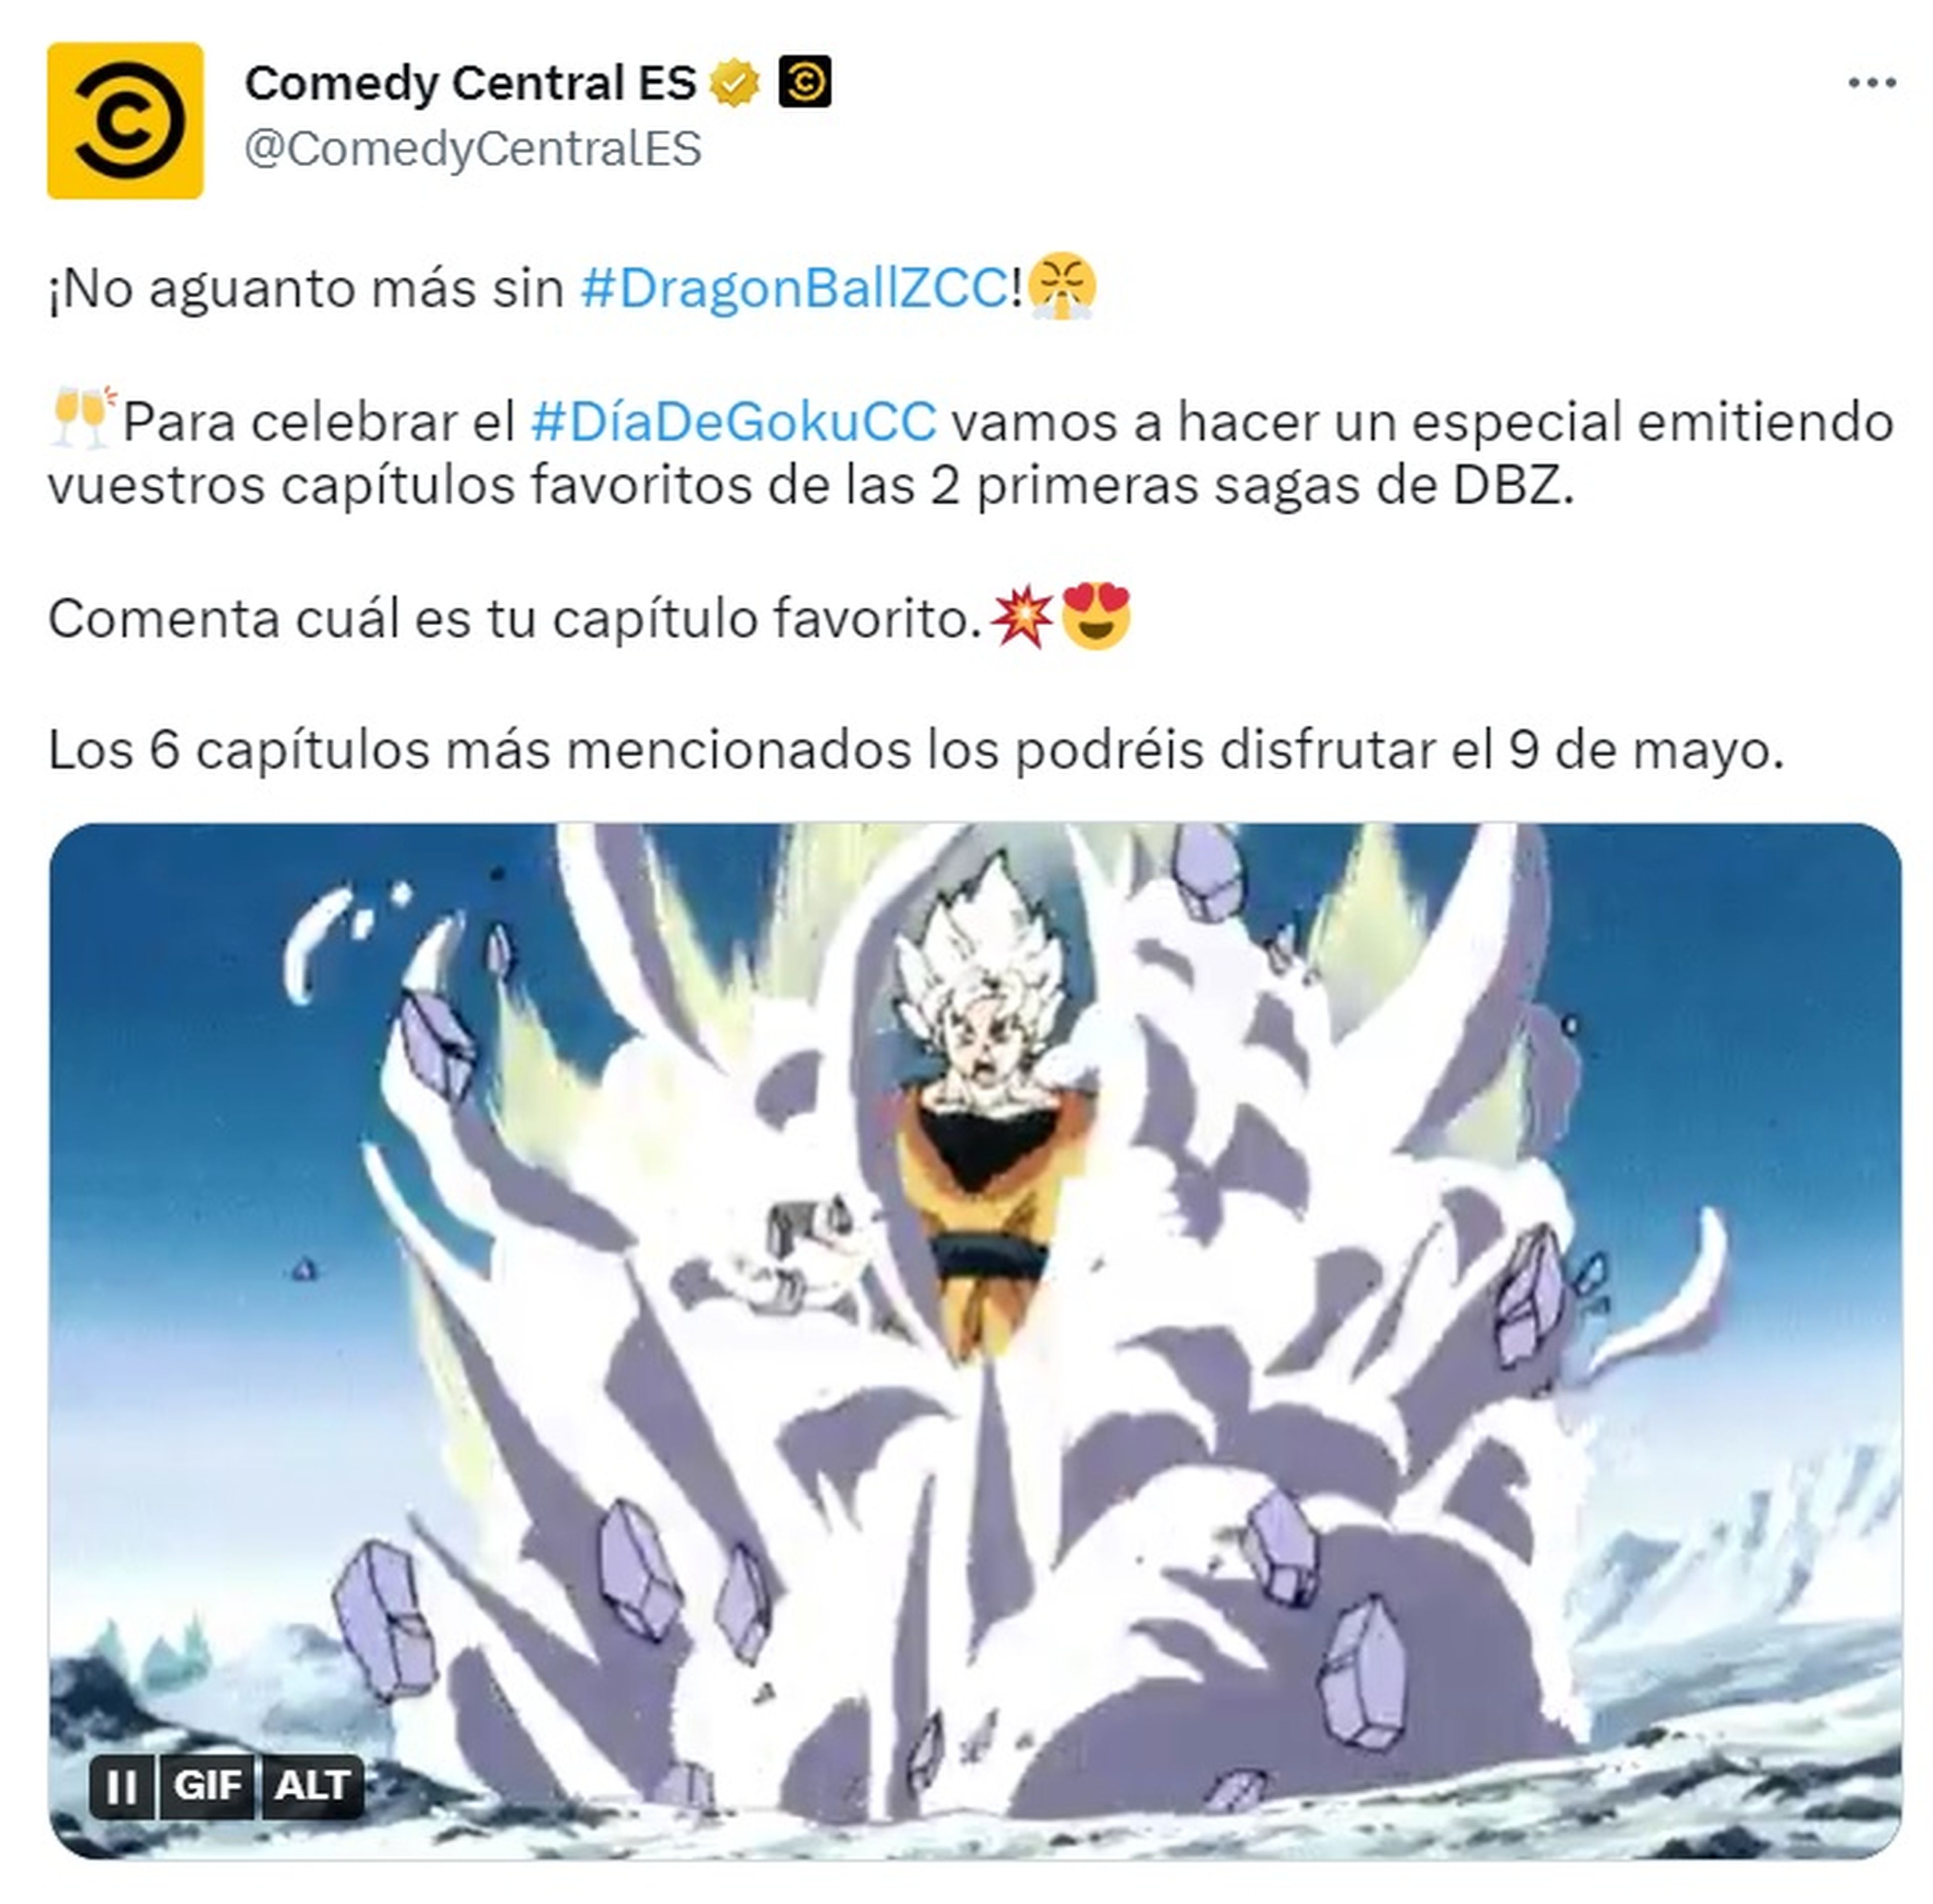 Dragon Ball Z - La cadena Comedy Central celebrará el Día de Goku emitiendo 6 capítulos de la serie elegidos por los fans. ¡Puedes votar!